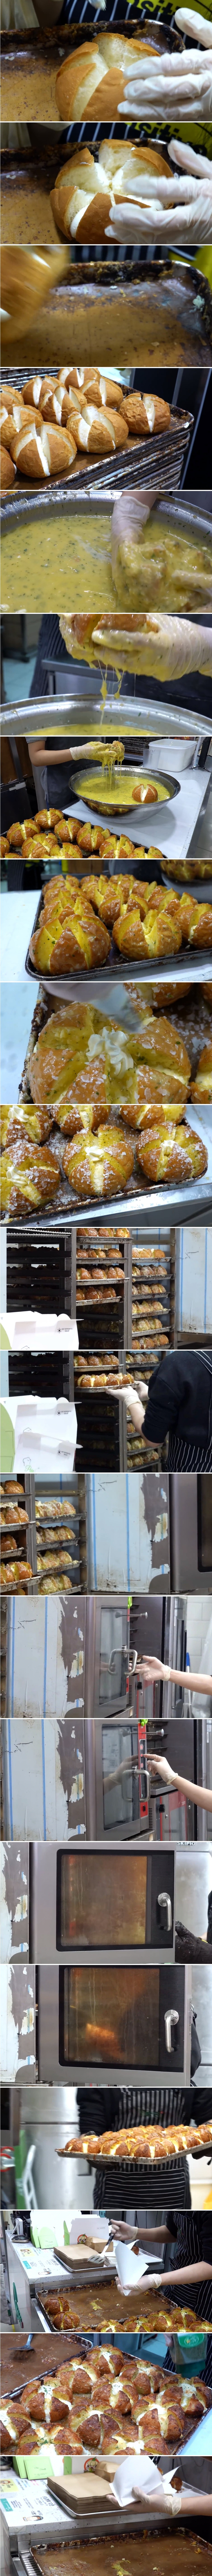  위생때문에 댓글 반응 난리난 빵집